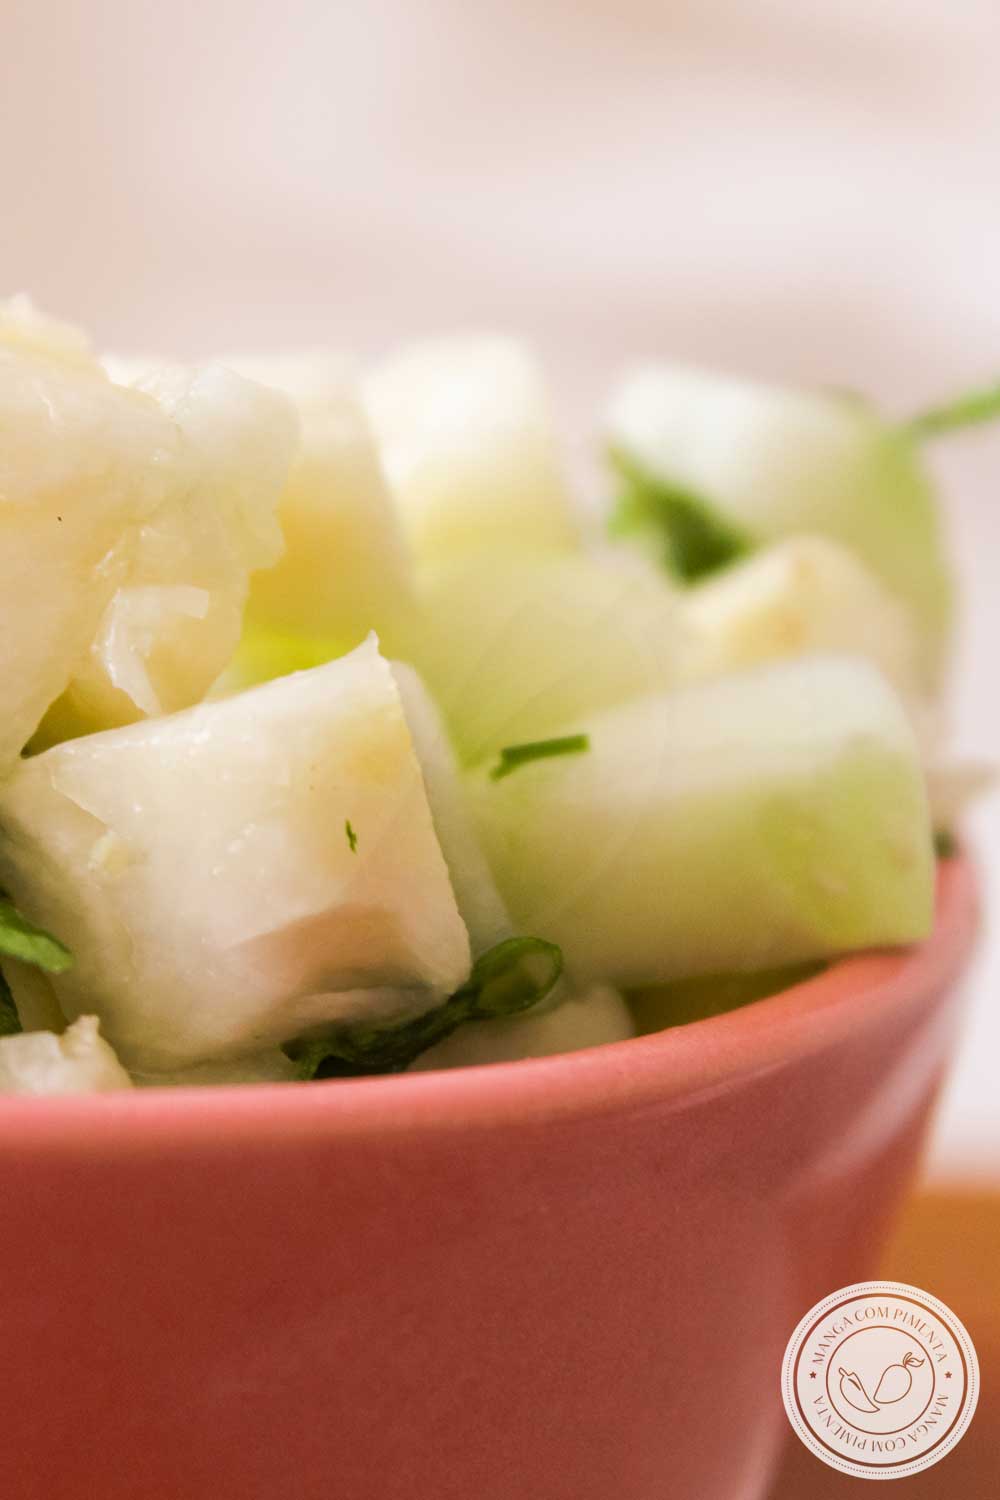 Receita de Salada de Abacaxi e Pepino - um prato refrescante para servir no almoço neste verão!